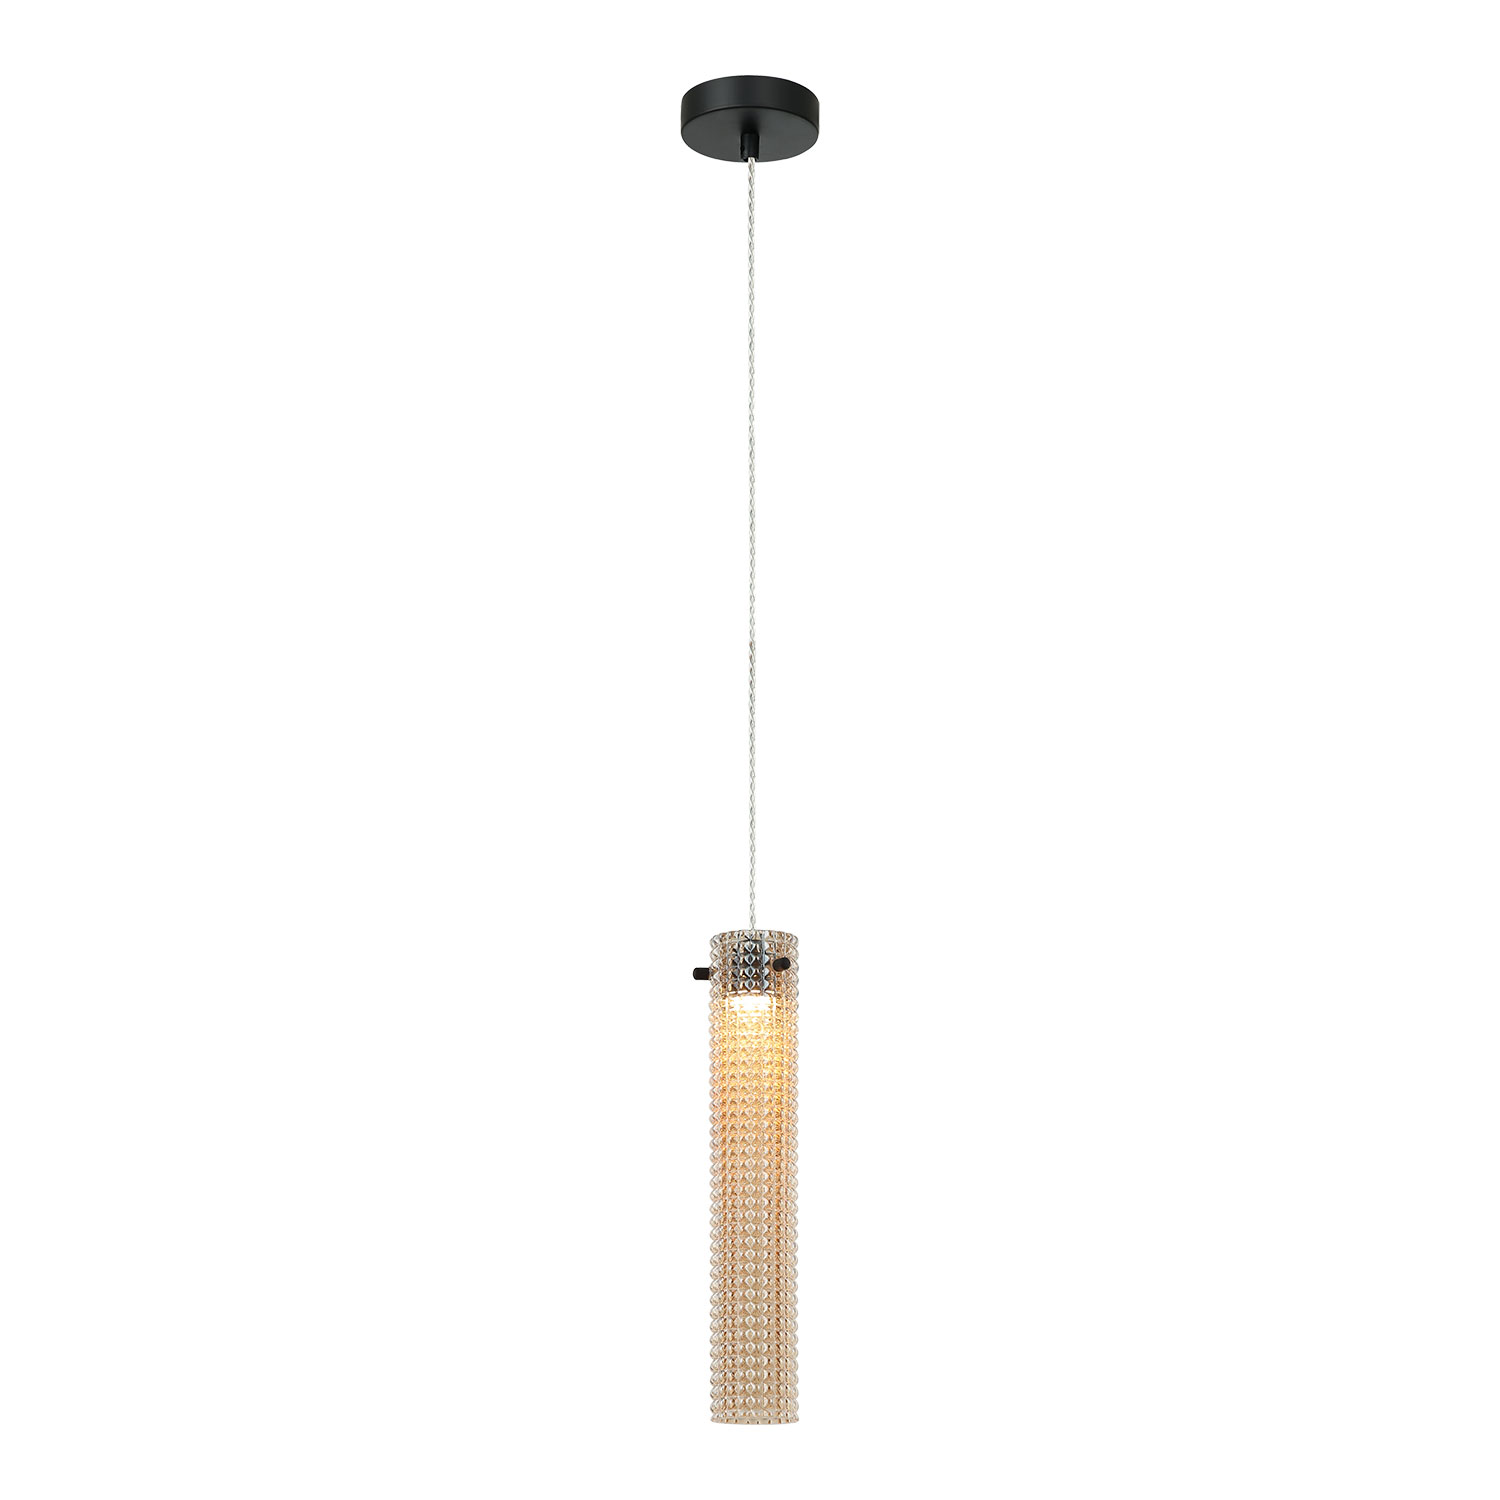 Подвесной светильник 6*40/171 см, 1*LED черный Lussole Floyd LSP-7172